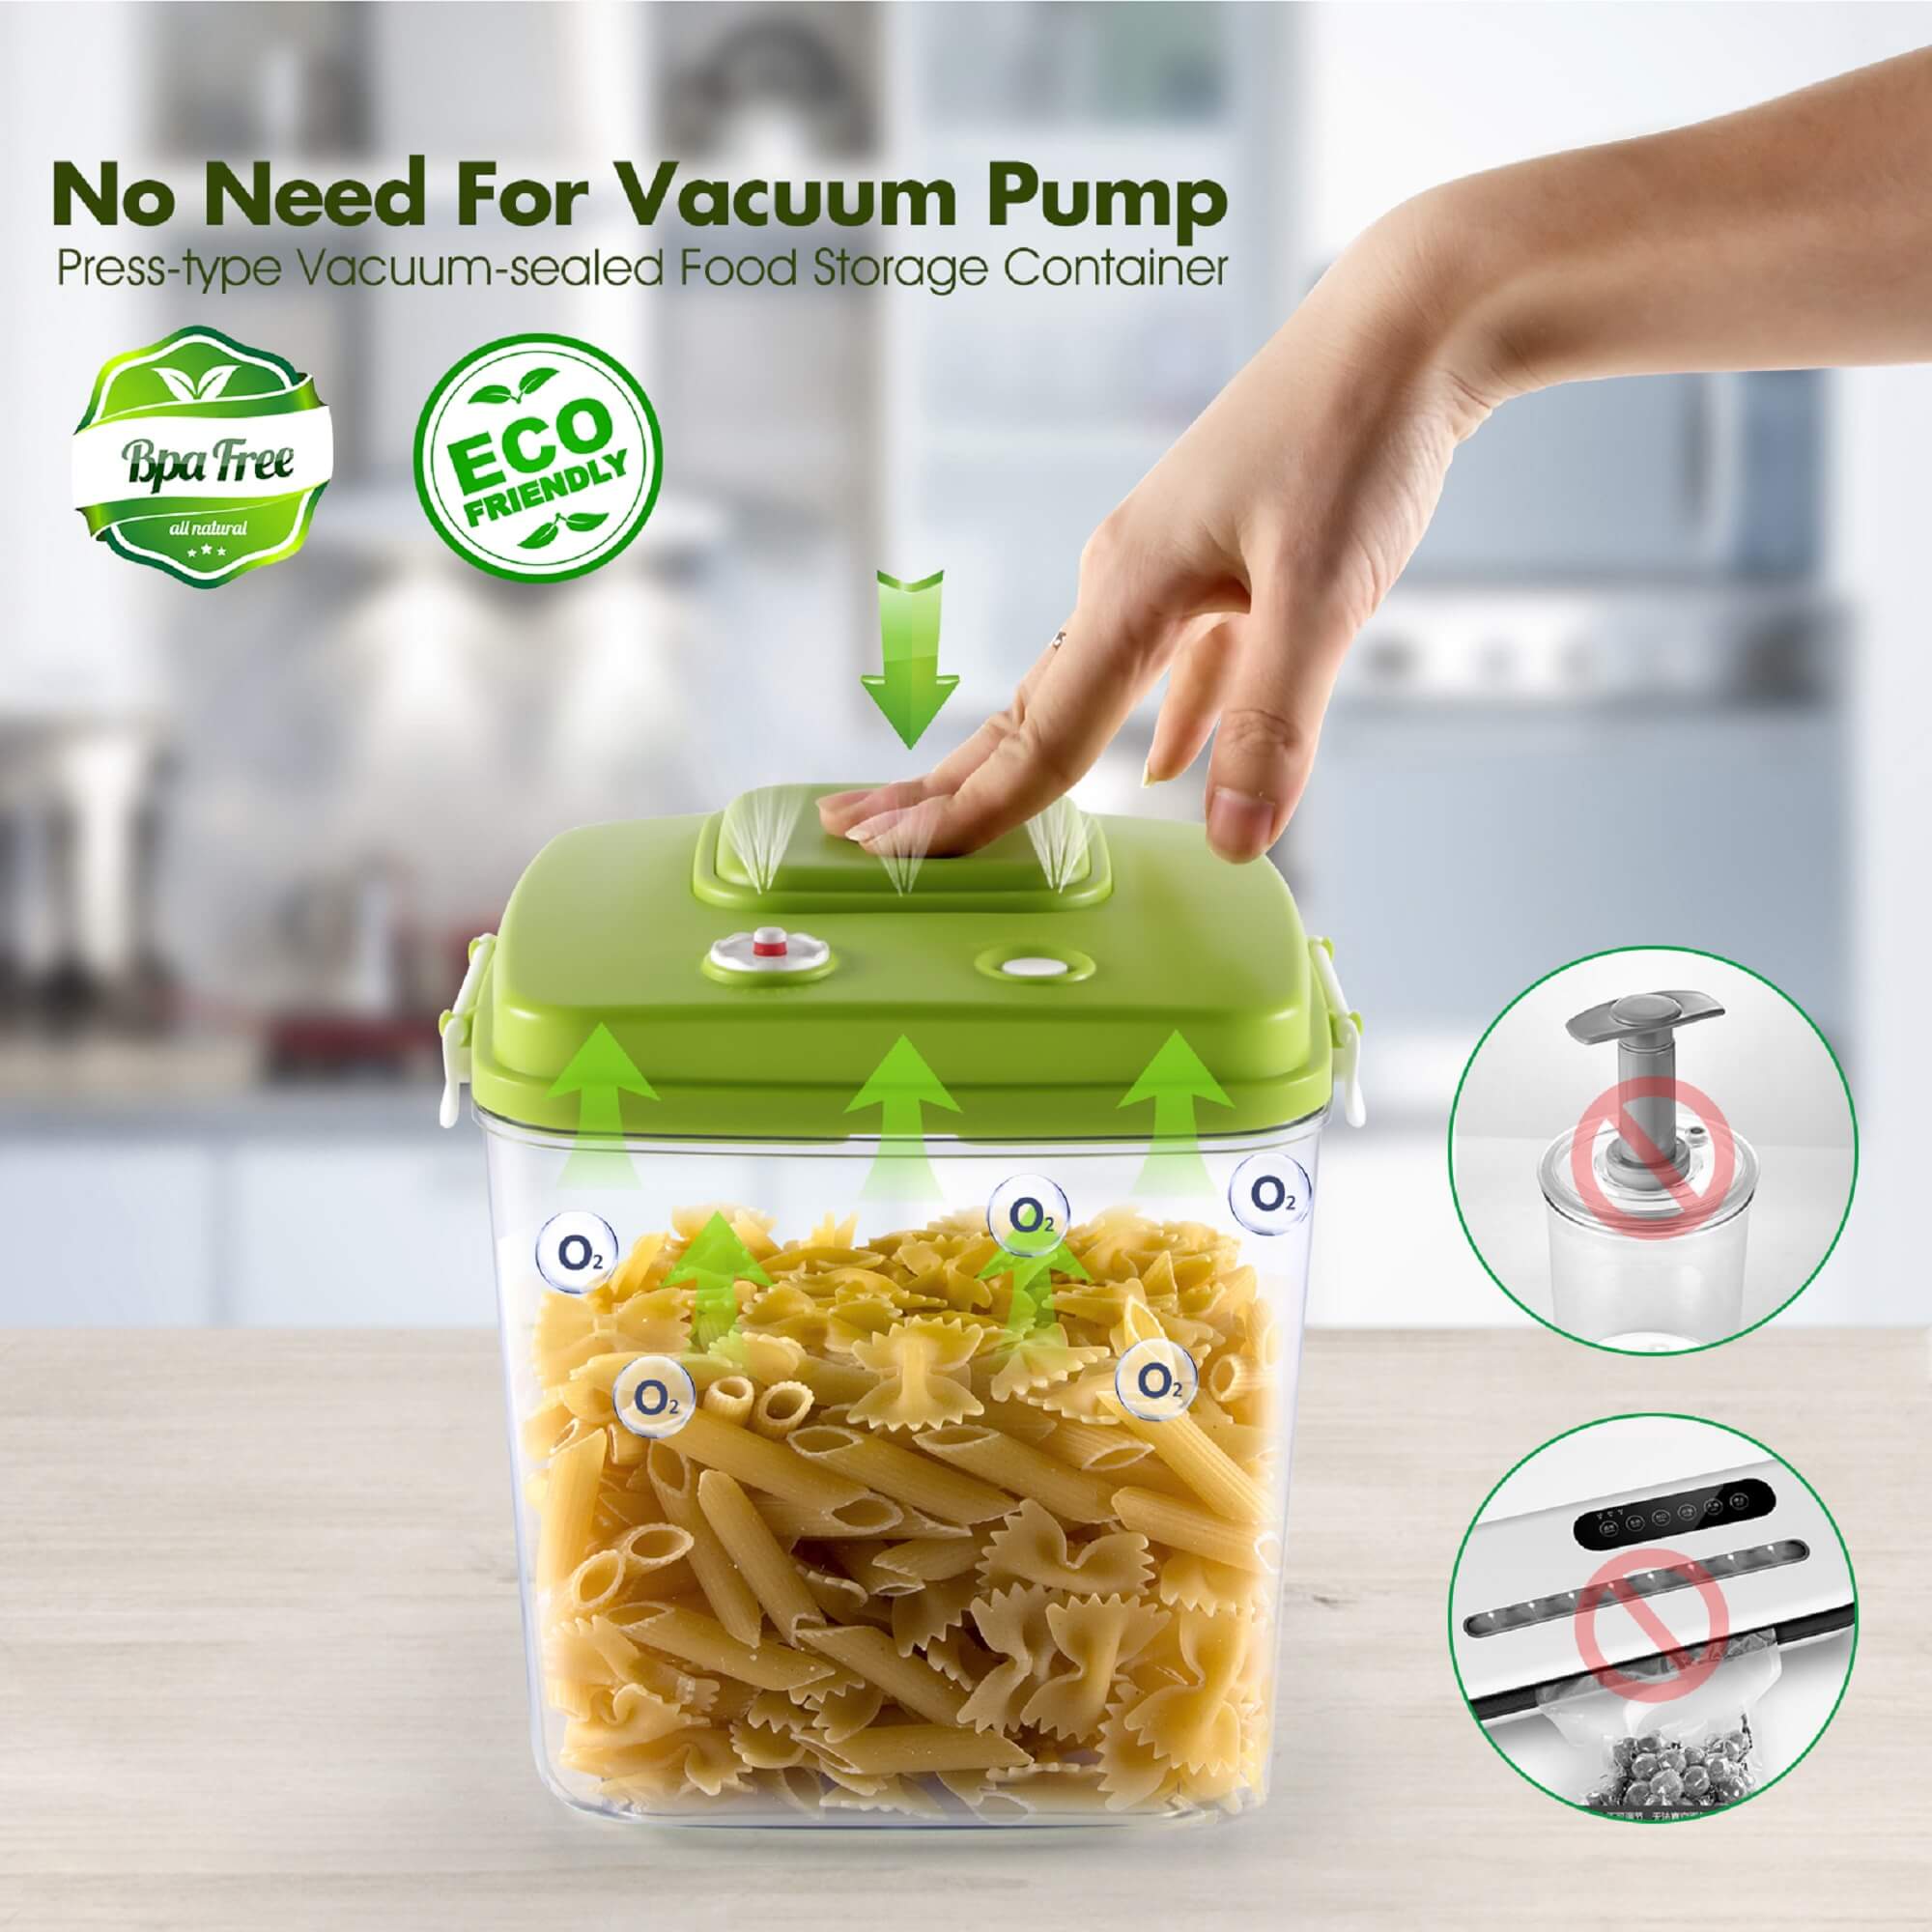 Vacuum-Sealed Food Storage Container